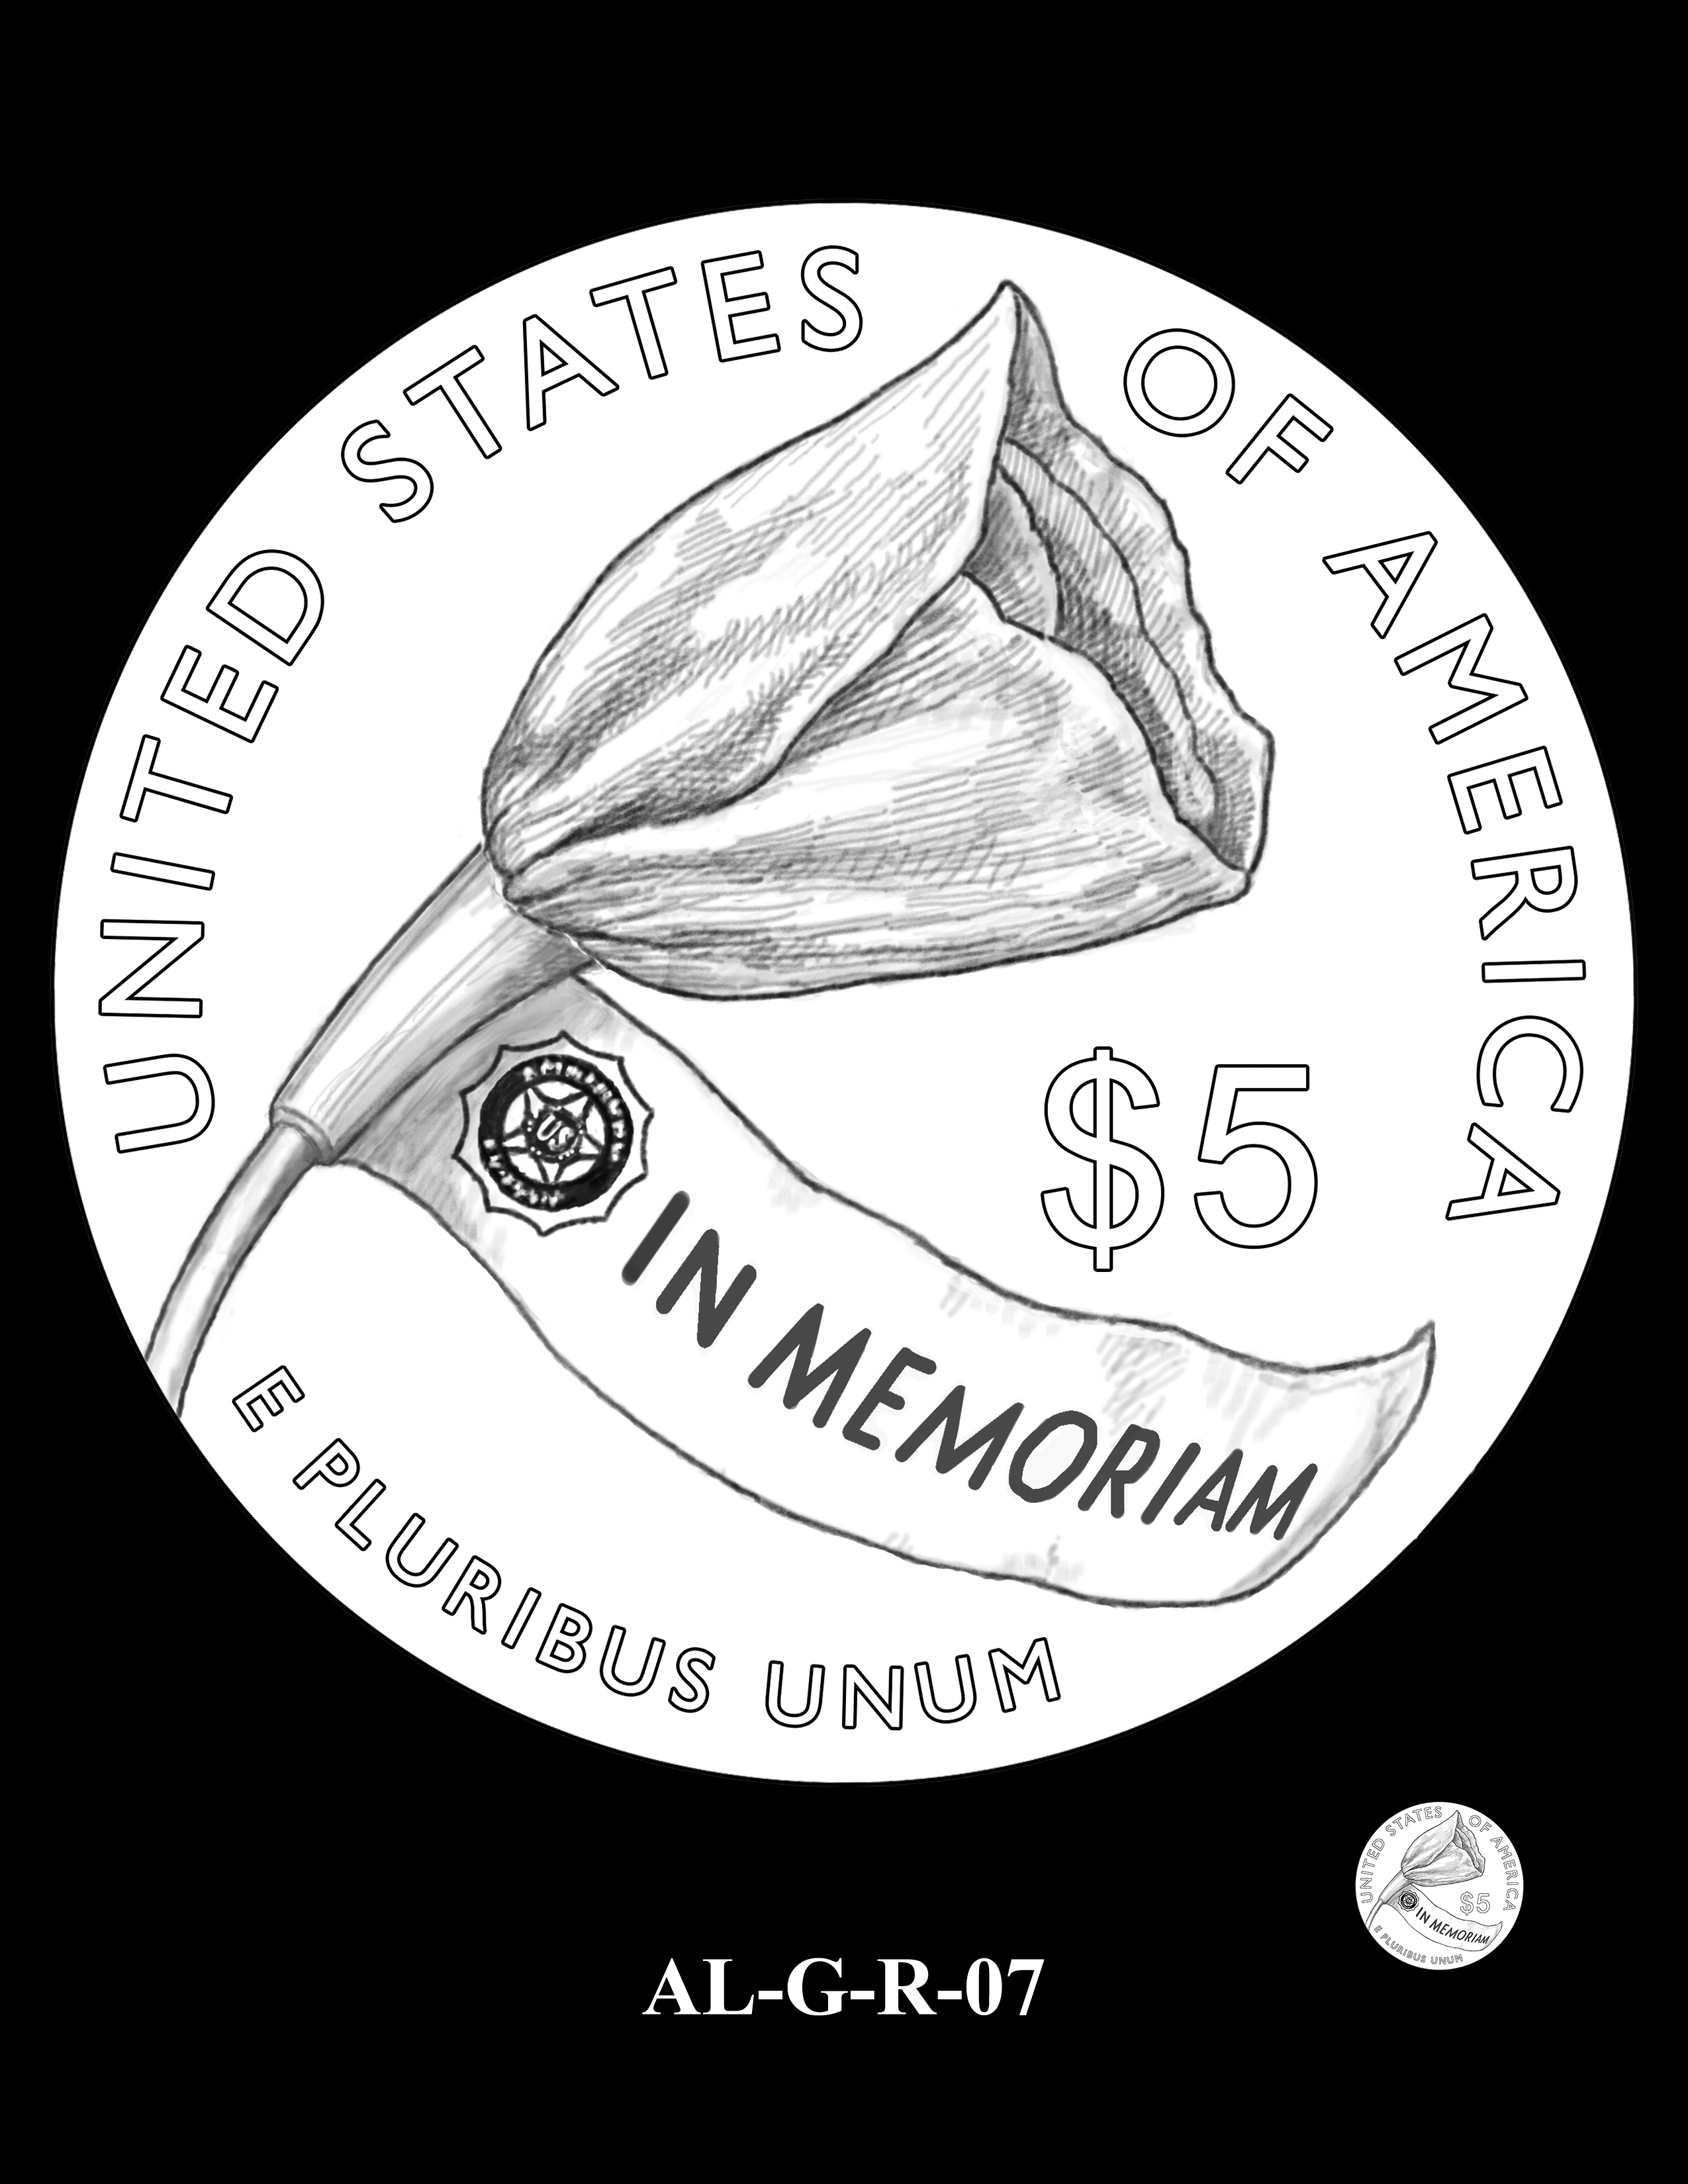 AL-G-R-07 -- 2019 American Legion 100th Anniversary Commemorative Coin Program - Gold Reverse